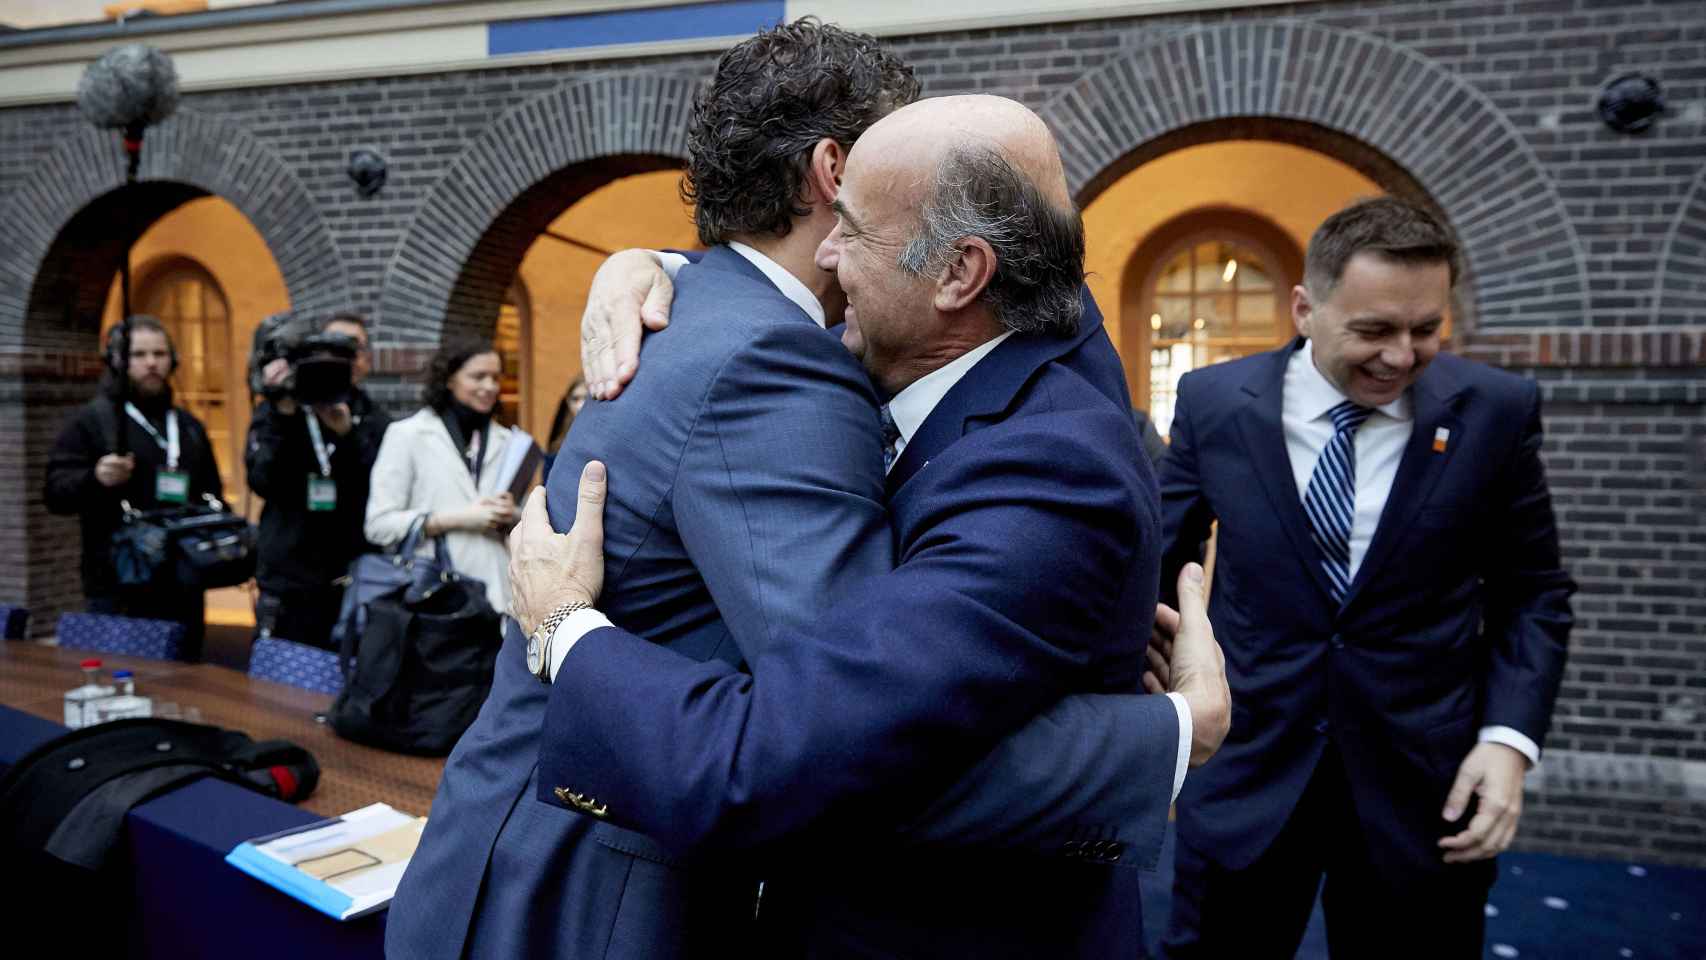 Afectuoso saludo entre Guindos y Dijsselbloem, que compitieron por la presidencia del Eurogrupo